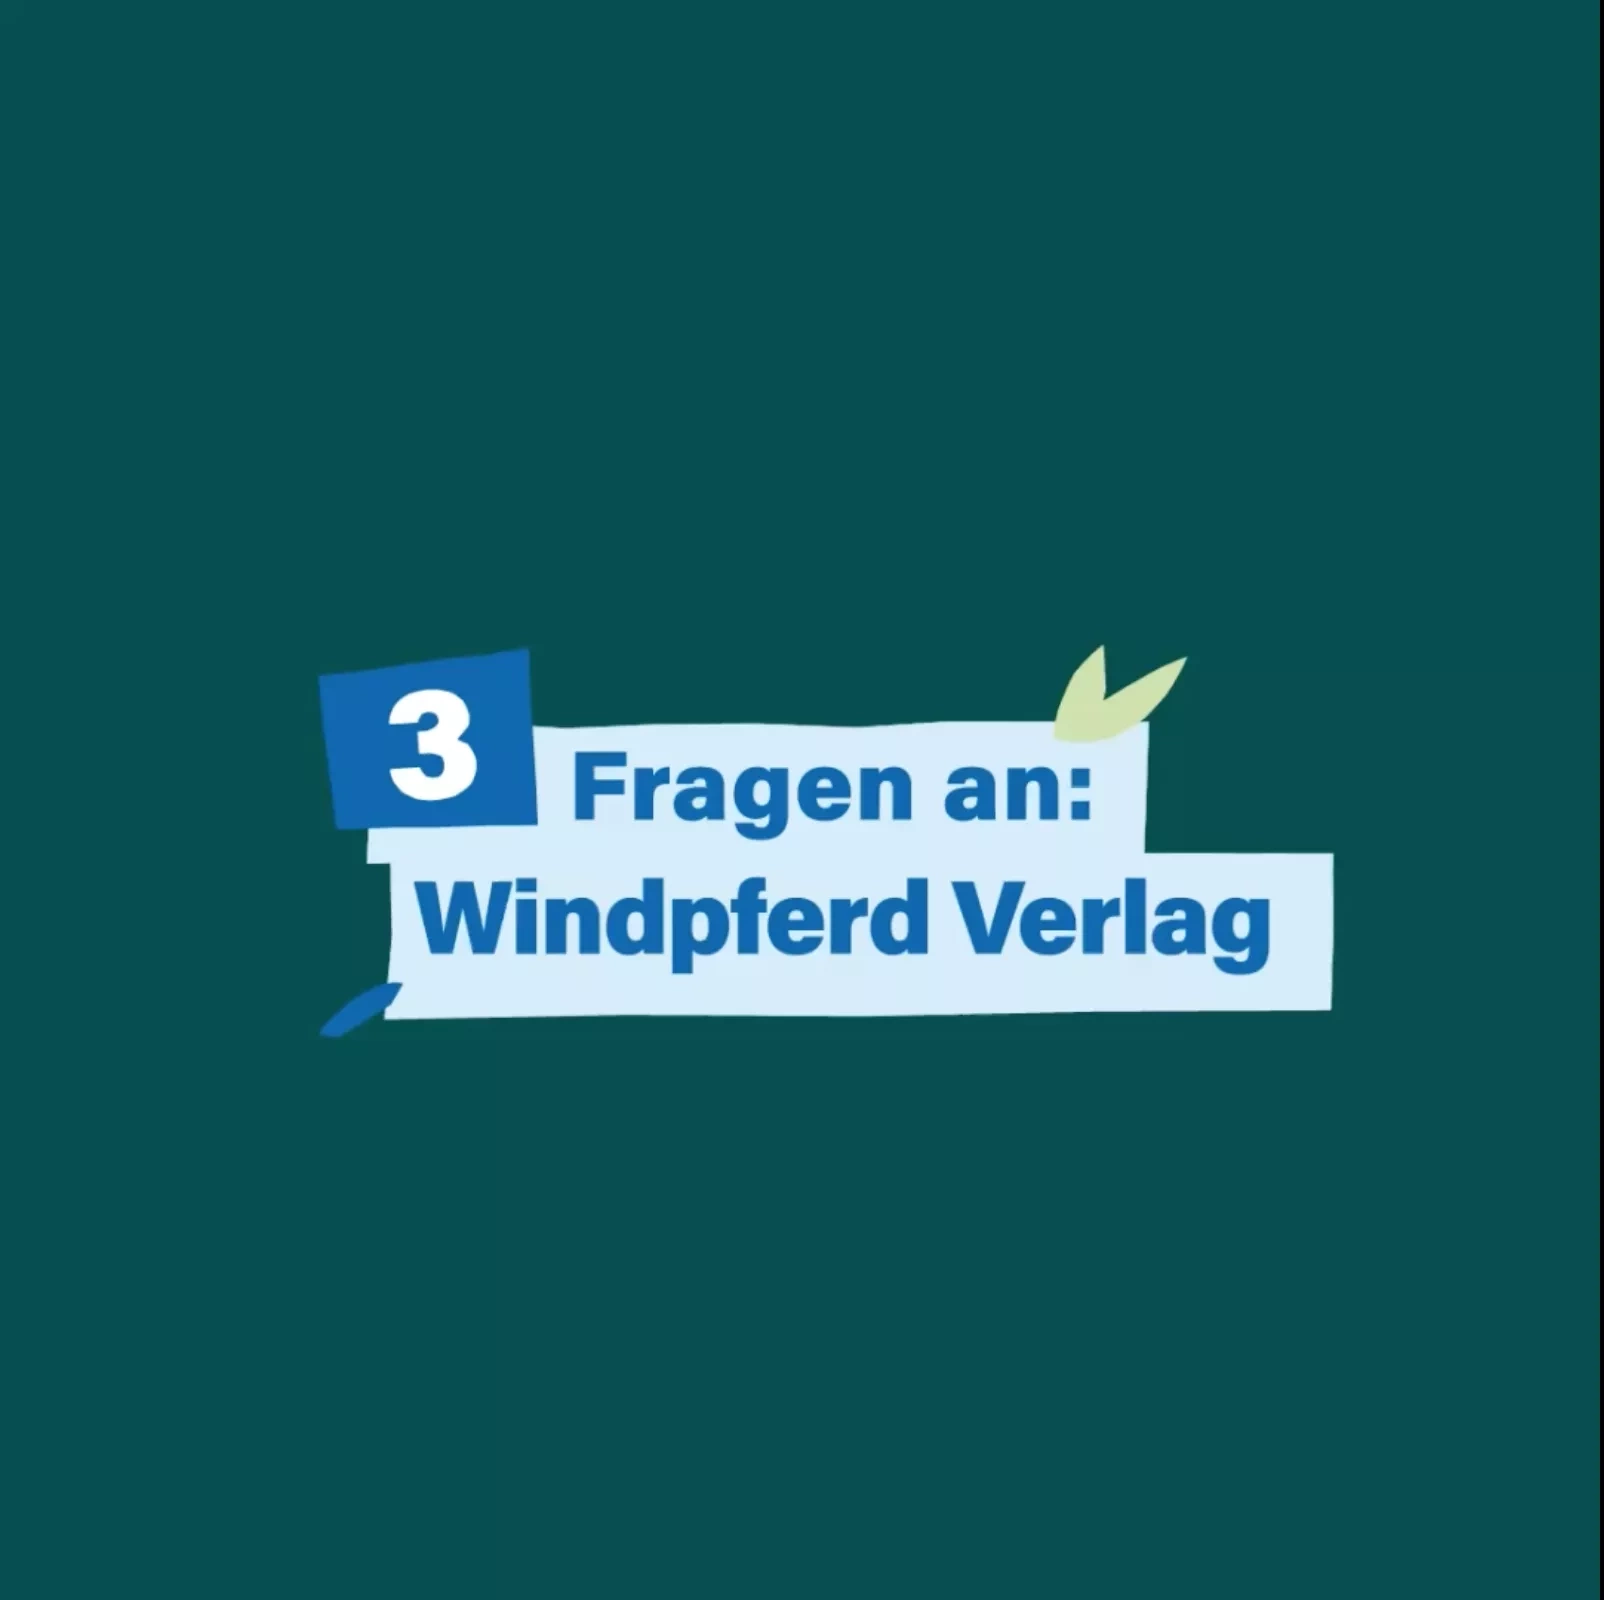 Startbild unseres Videos 3 Fragen an: Windpferd Verlag - dunkelgrüner Hintergrund mit dem Titel in blauer Schrift